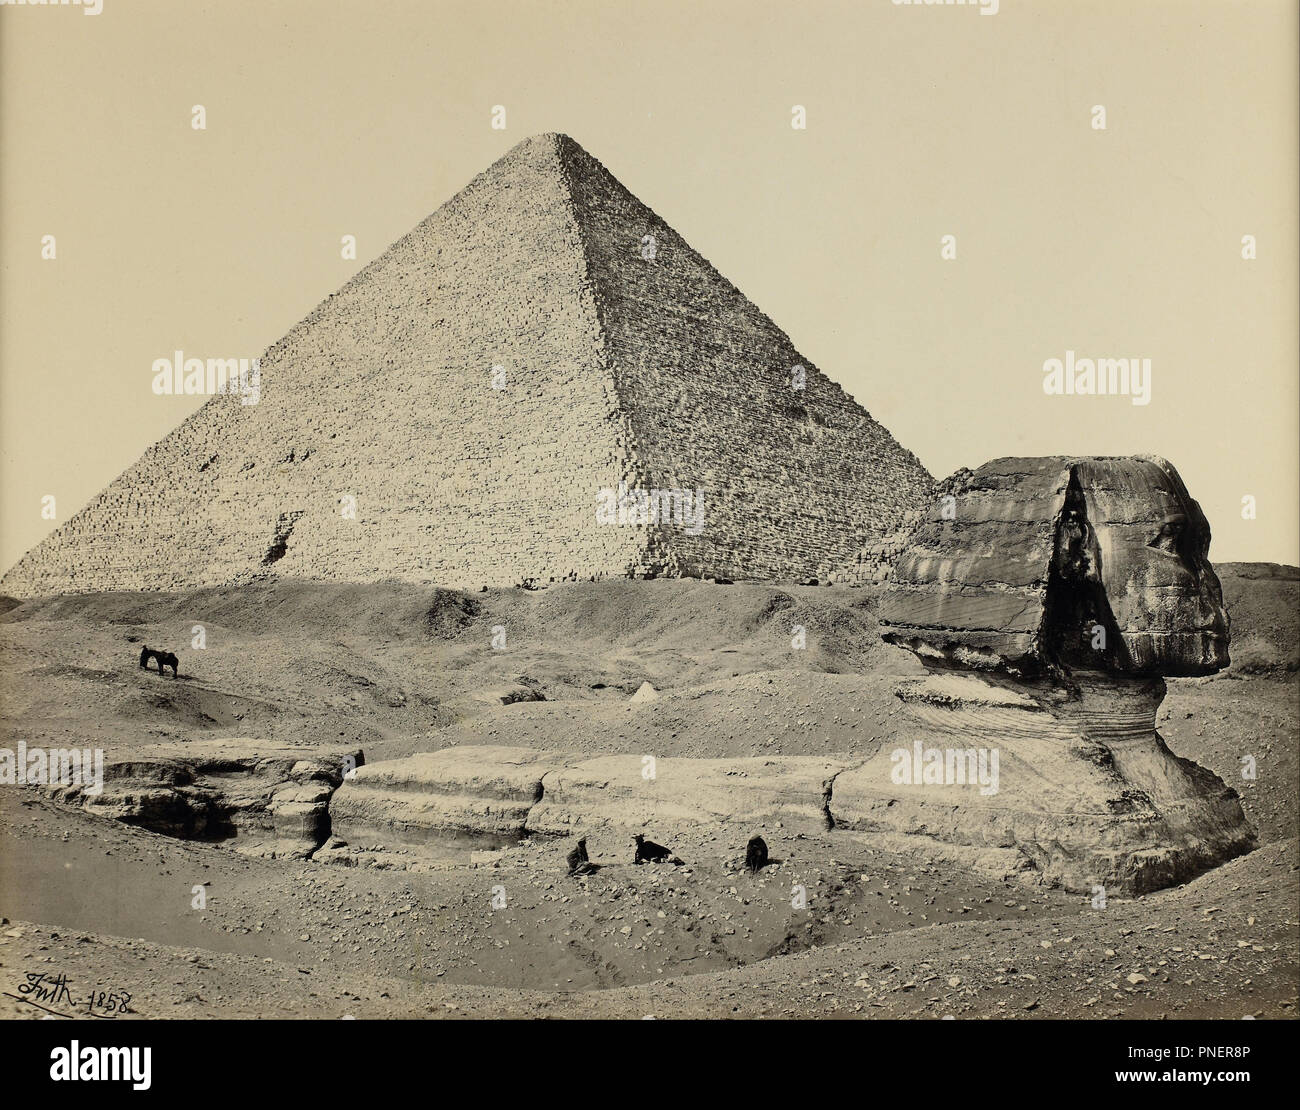 Die große Pyramide und die Große Sphinx, Ägypten. Datum/Zeitraum: 1858. Mammut Eiweiß drucken. Breite: 19,5 in. Höhe: 15.44 in (Bild). Autor: Francis Frith. Stockfoto